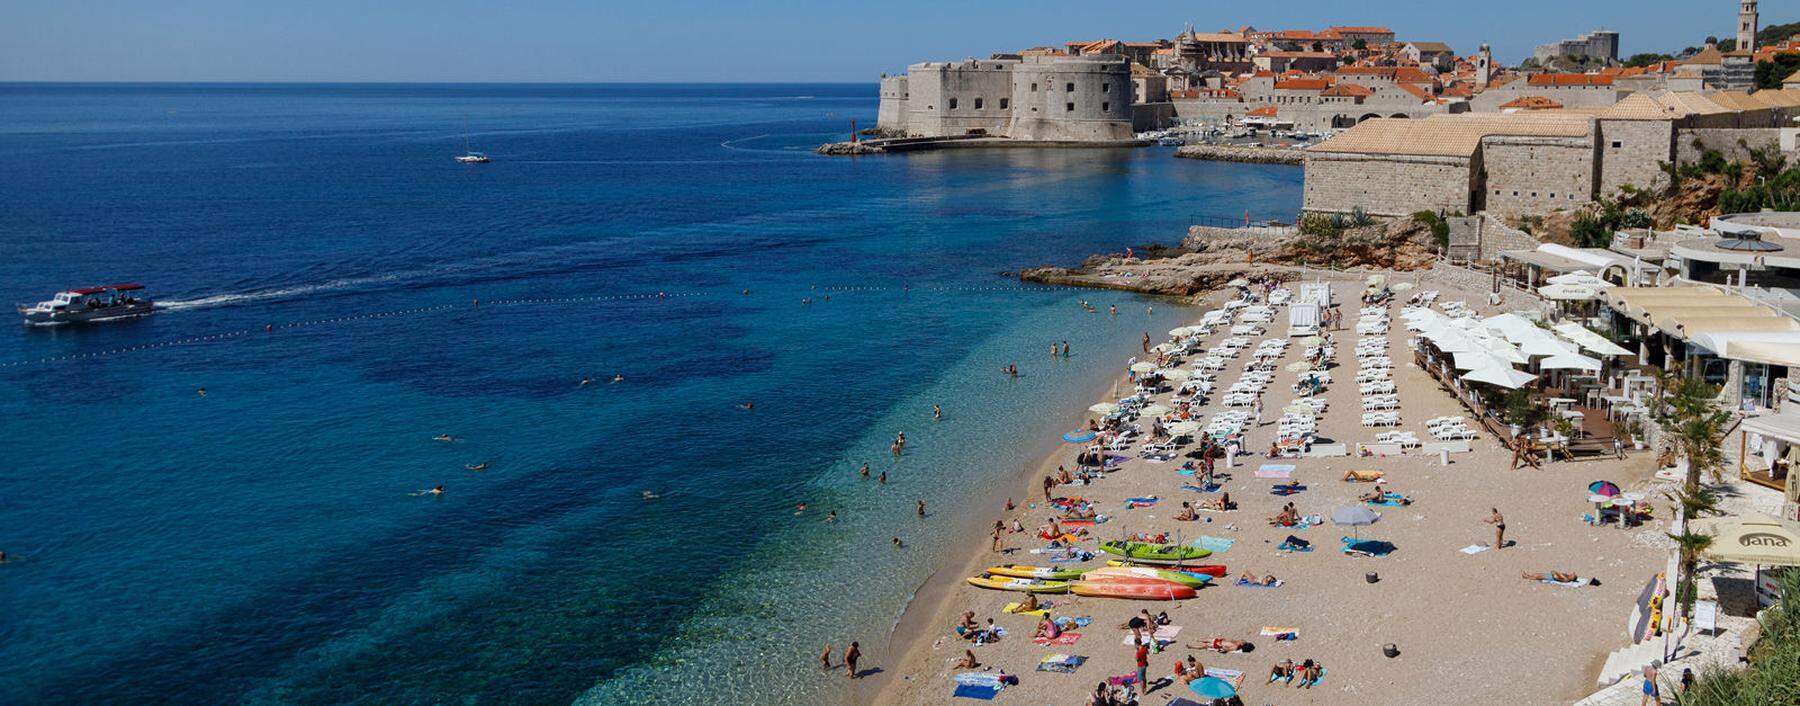 Urlauber am Strand von Dubrovnik. 